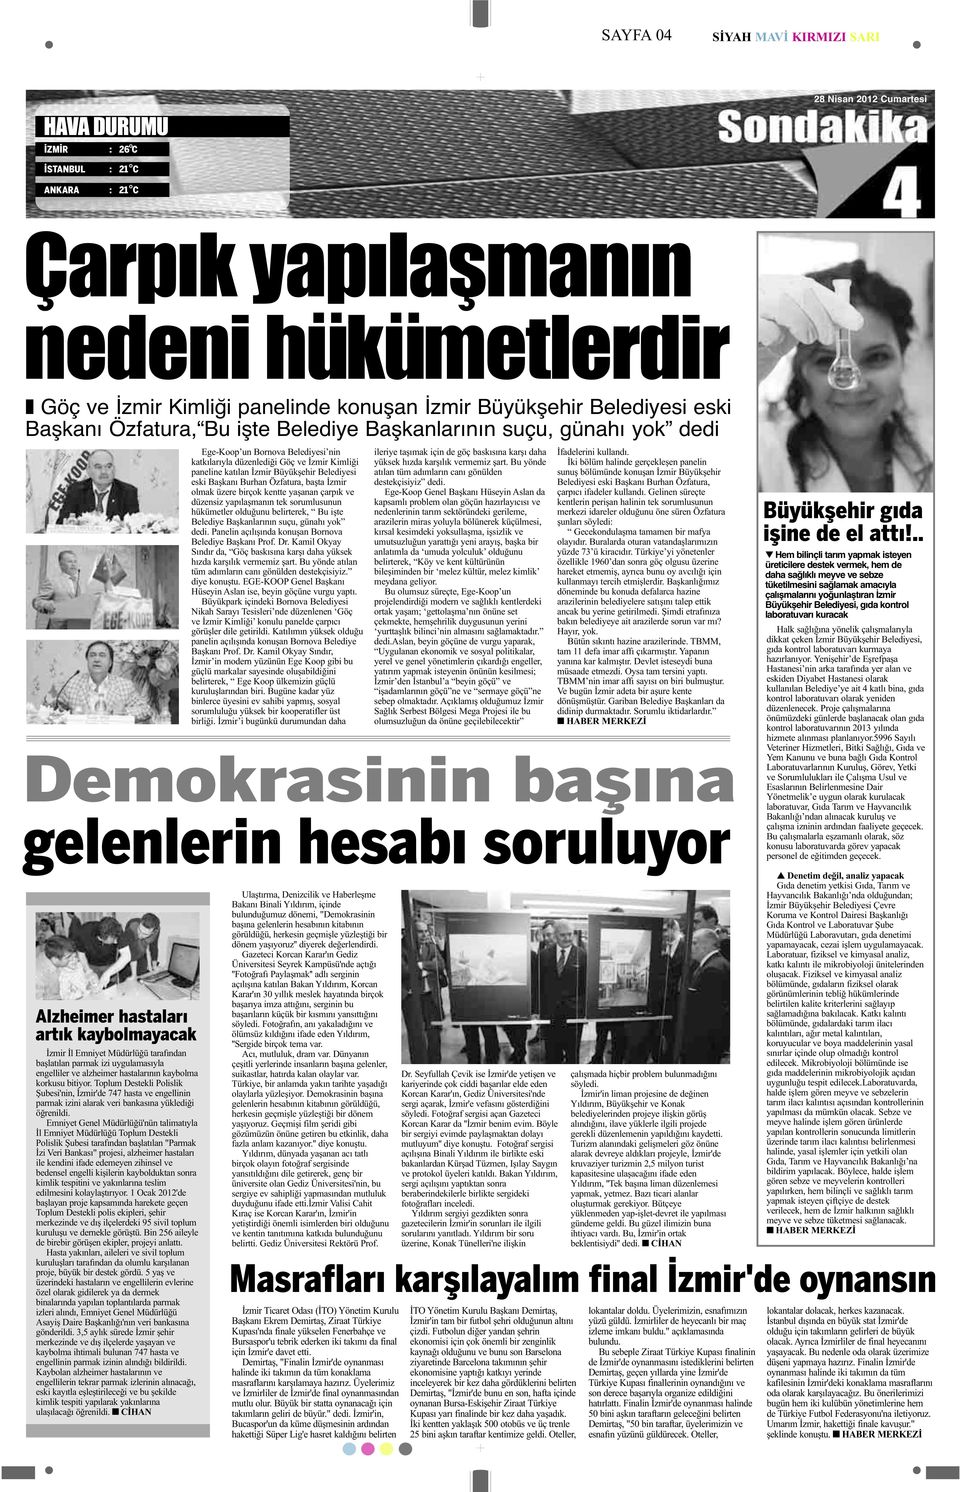 Başkanı Burhan Özfatura, başta İzmir olmak üzere birçok kentte yaşanan çarpık ve düzensiz yapılaşmanın tek sorumlusunun hükümetler olduğunu belirterek, Bu işte Belediye Başkanlarının suçu, günahı yok